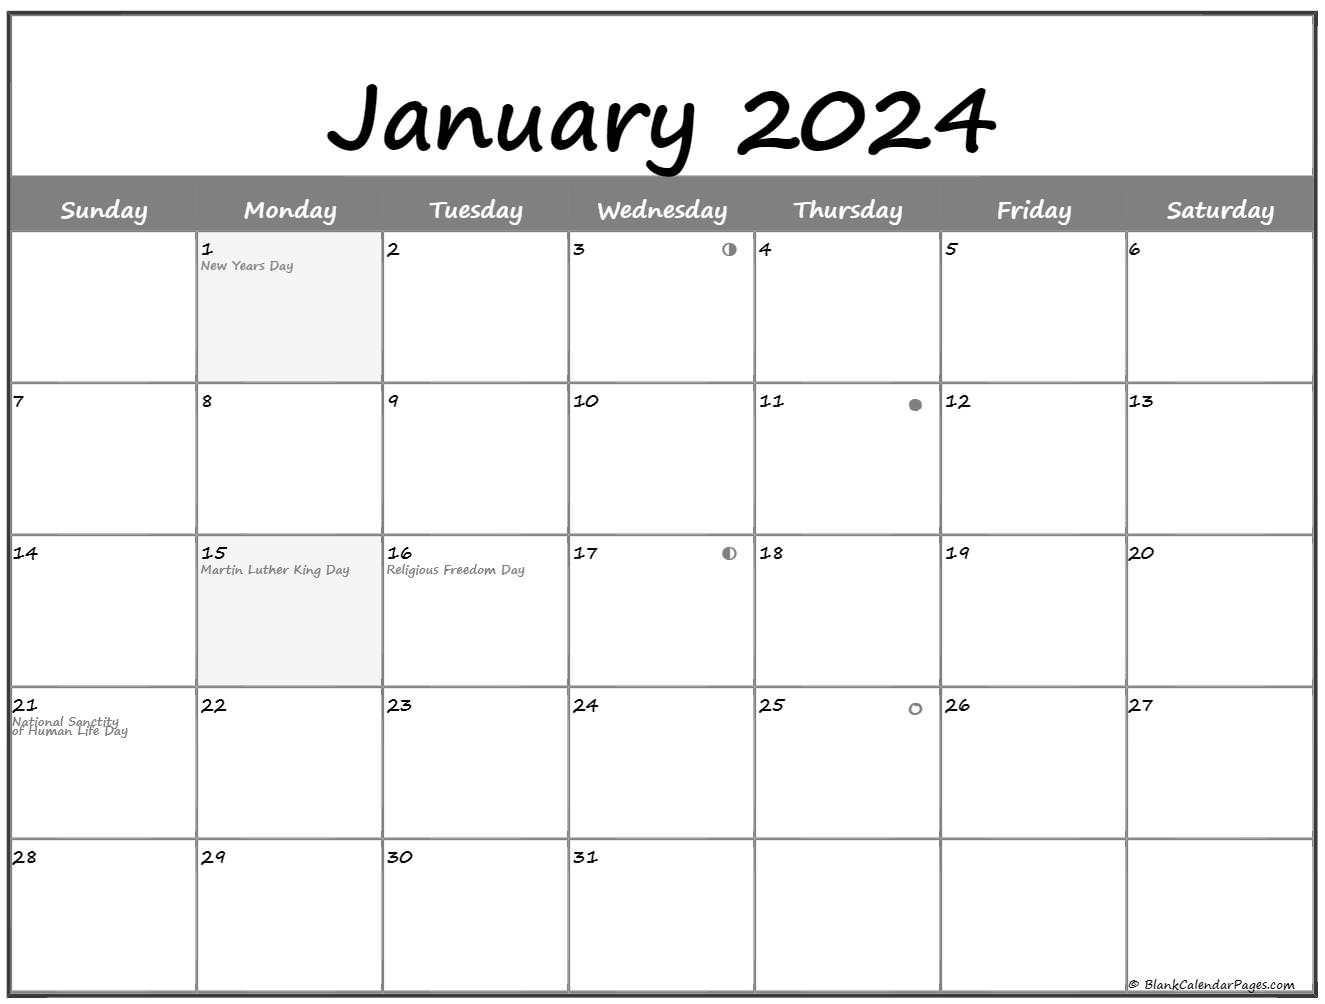 January 2021 Lunar Calendar Moon Phase Calendar